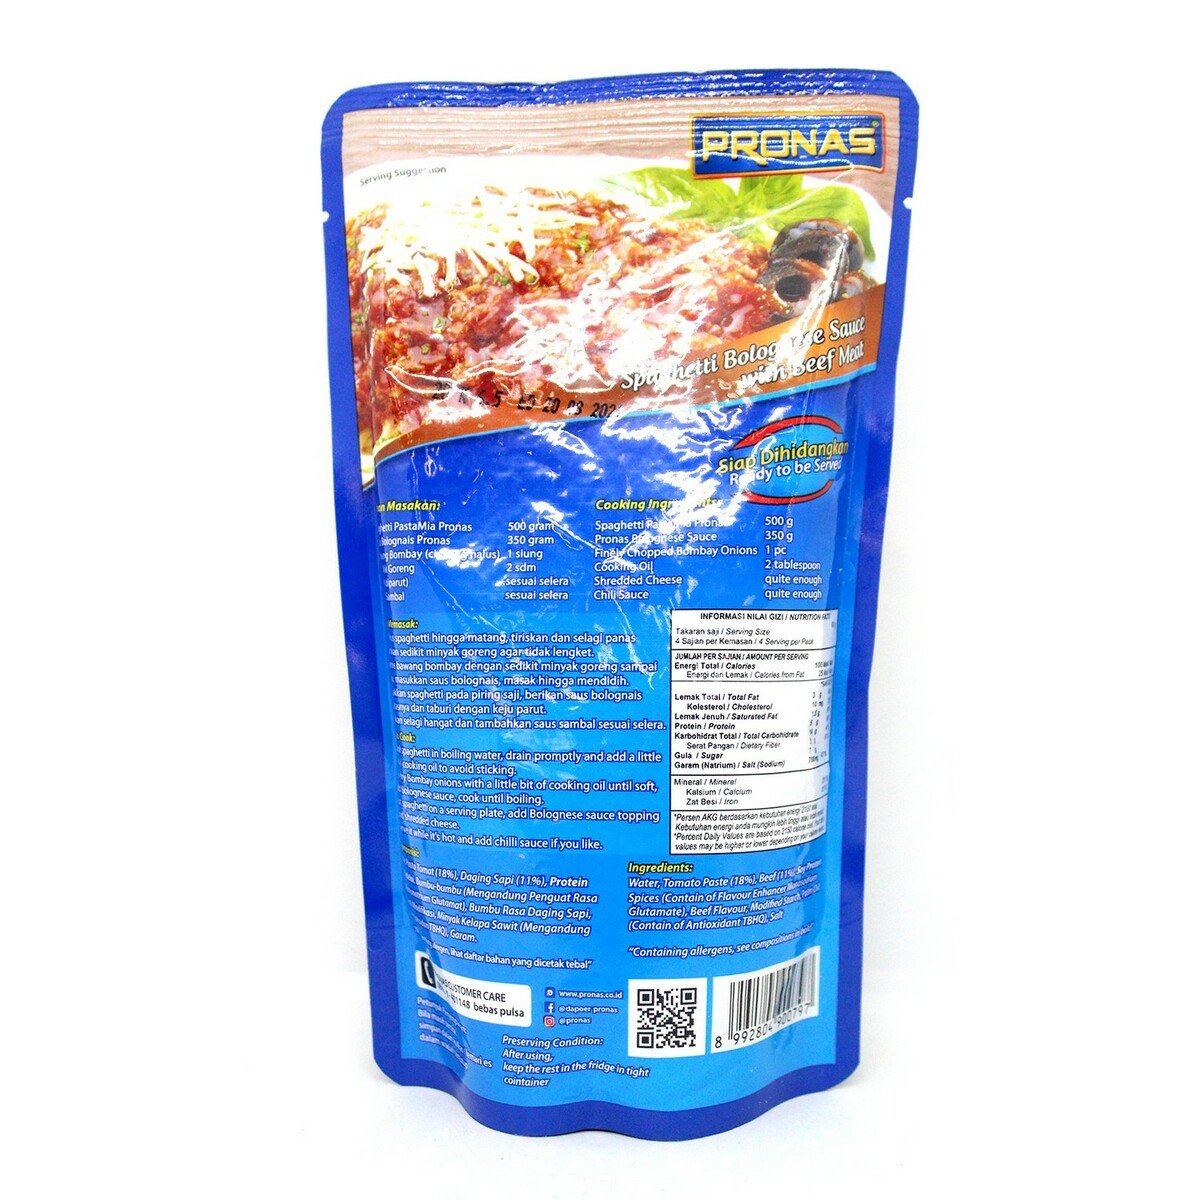 Pronas Spaghetti Bolognese Sauce 350g